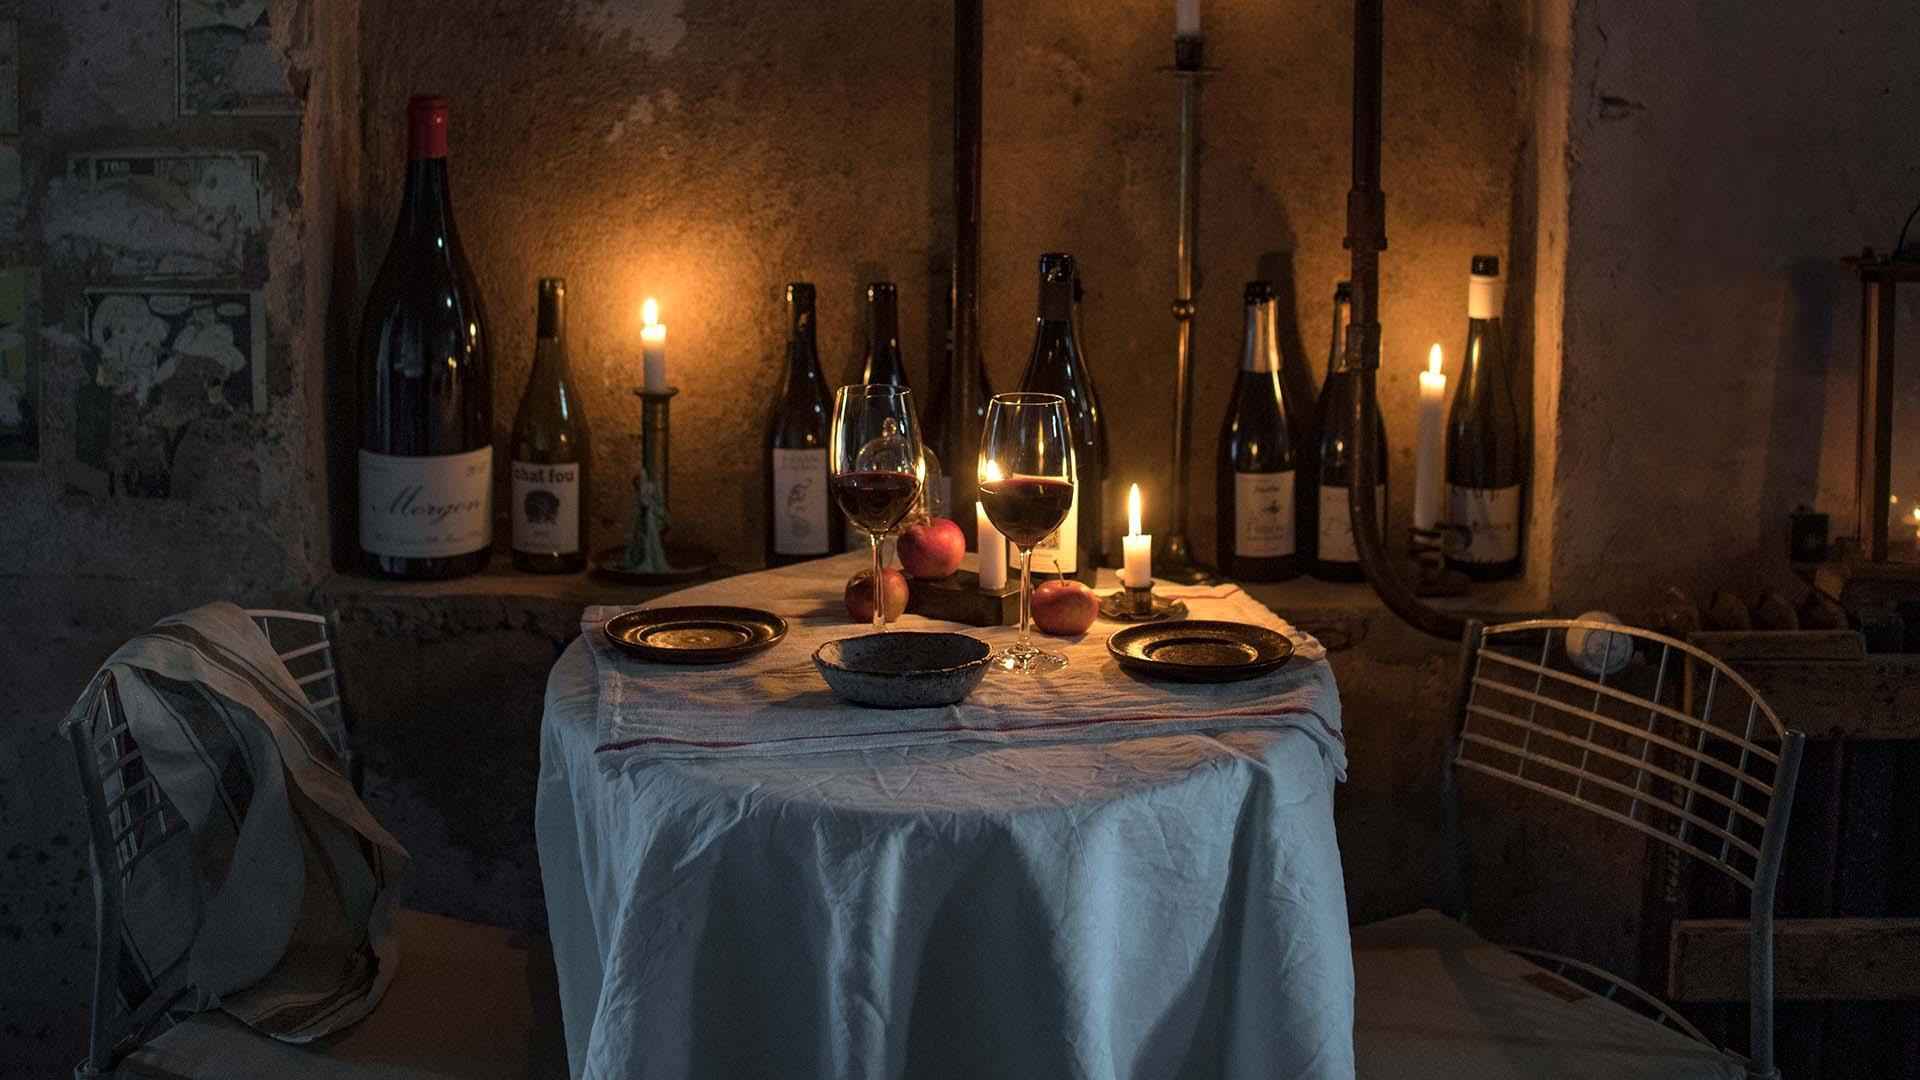 Een tafel voor twee met een wit tafelkleed, borden en twee glazen gevuld met rode wijn. De muur is versierd met lege wijnflessen en brandende kaarsen.